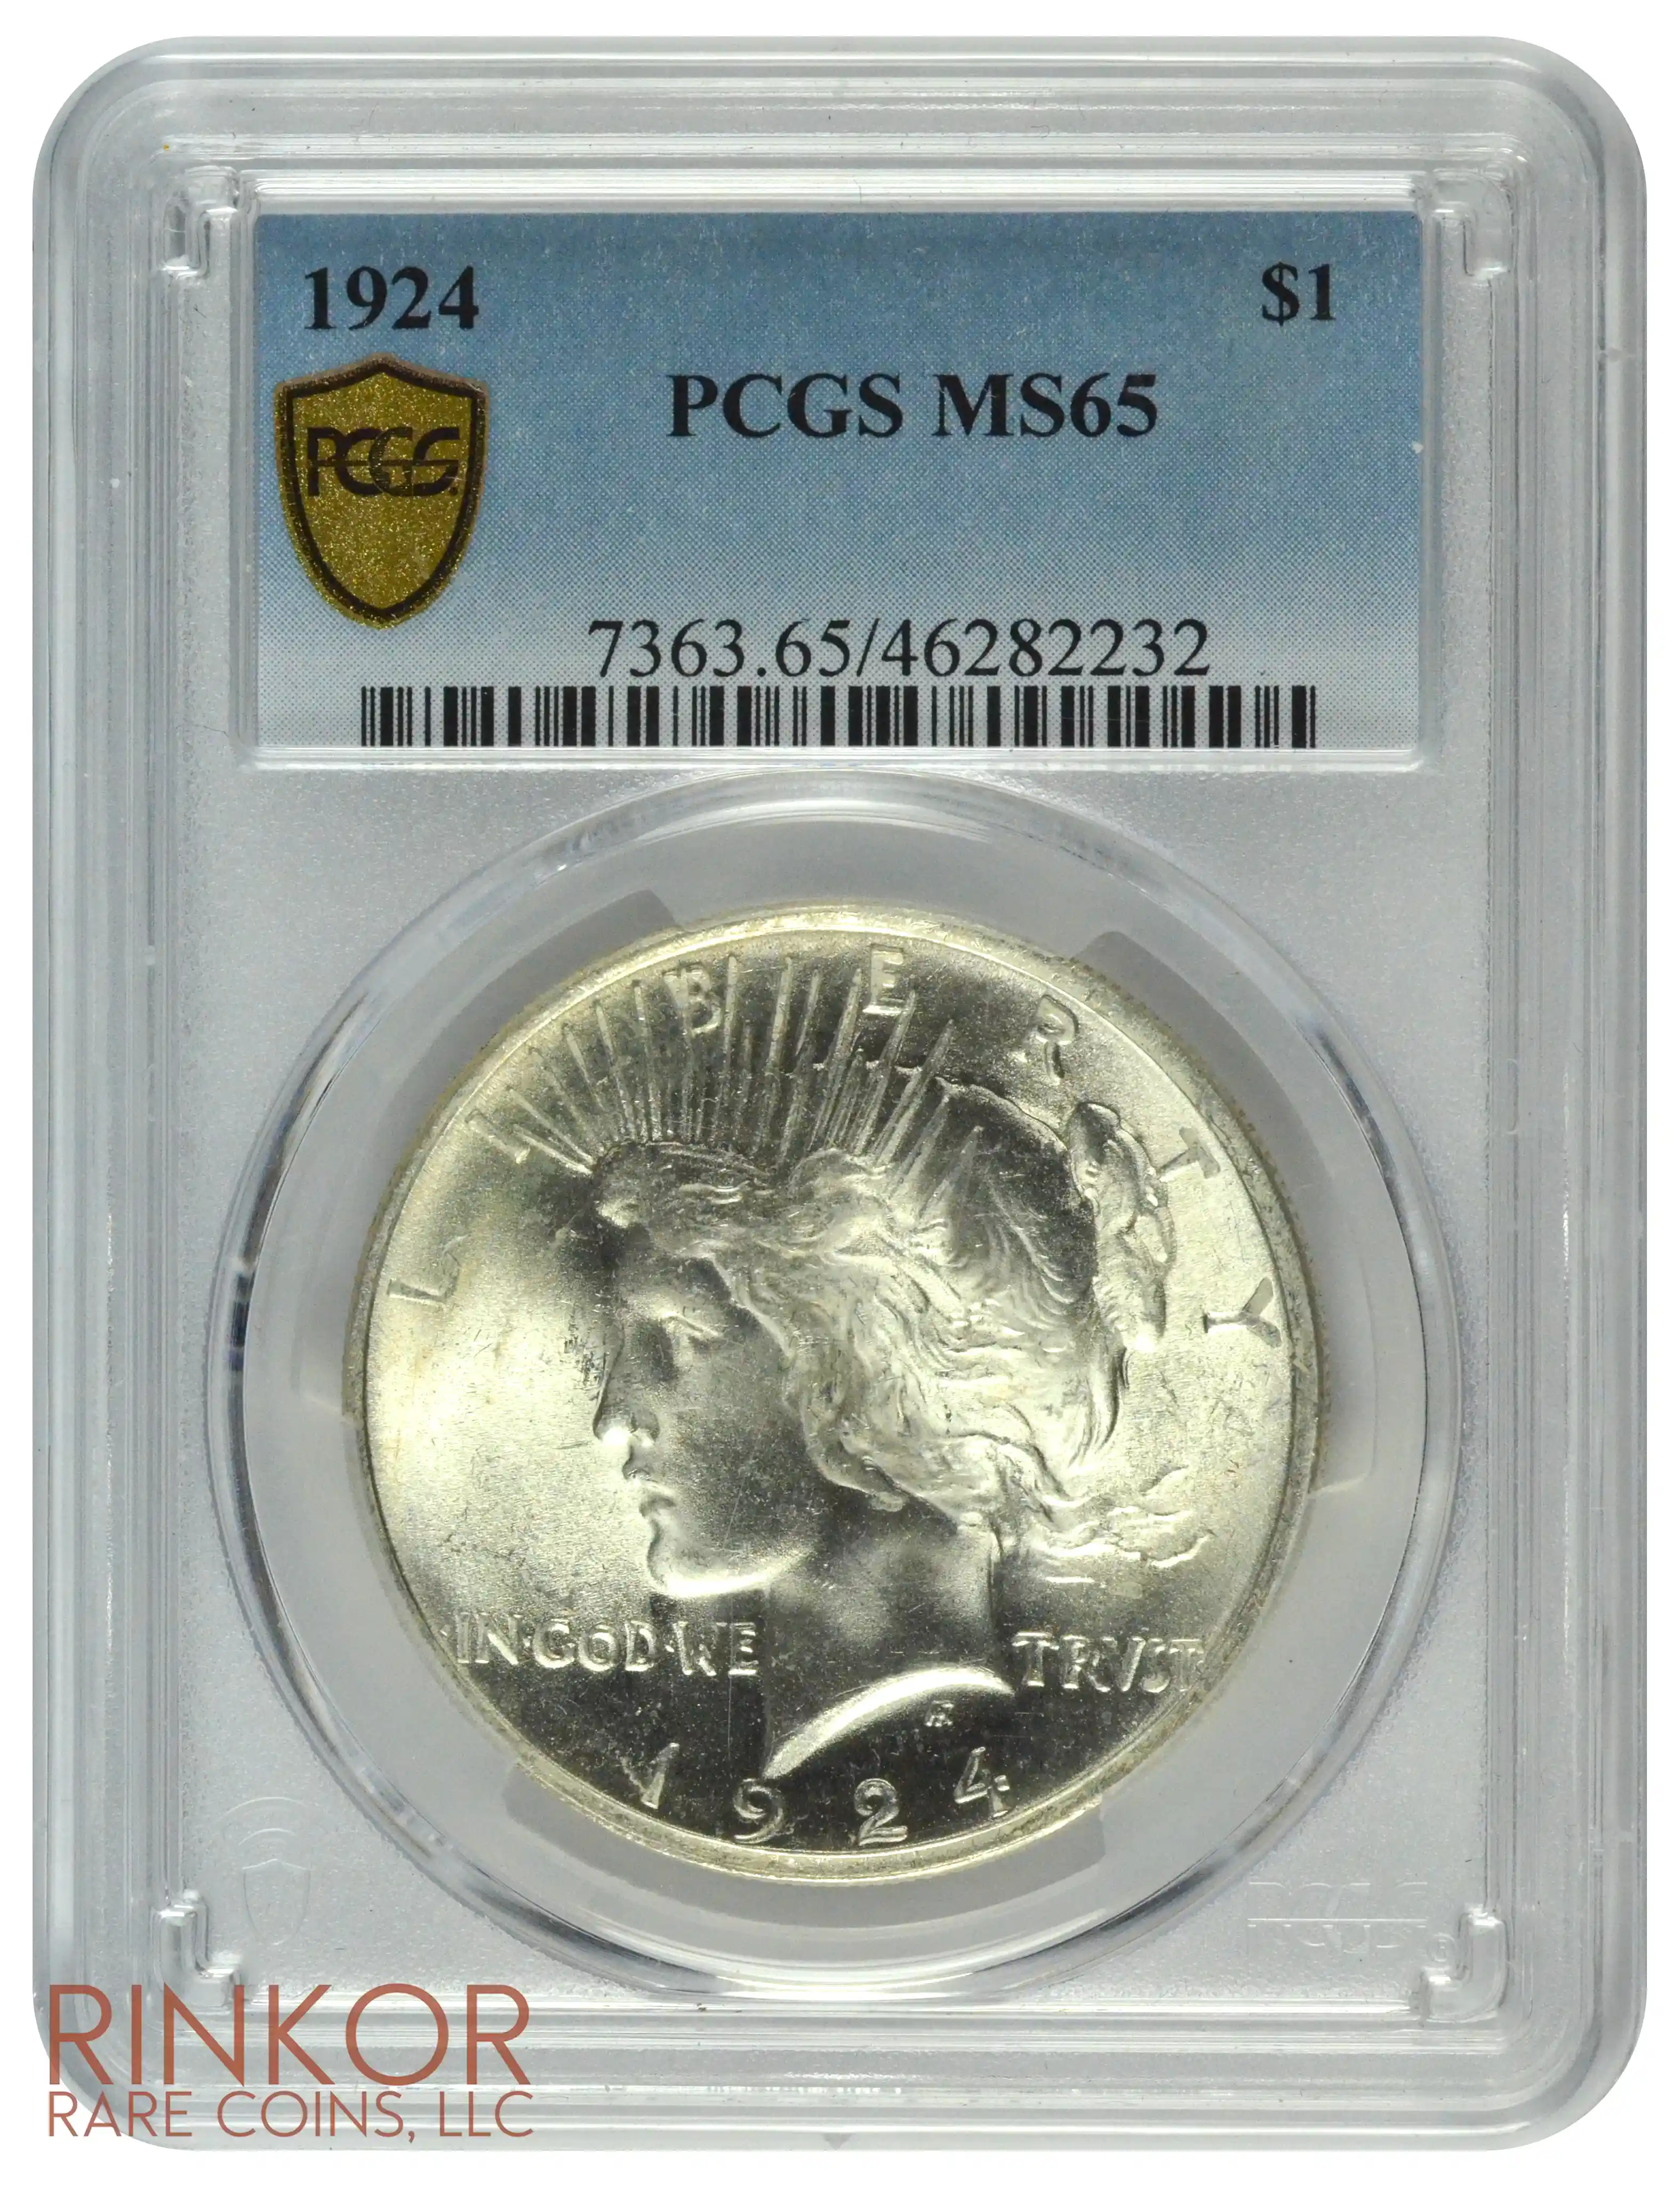 1924 $1 PCGS MS 65